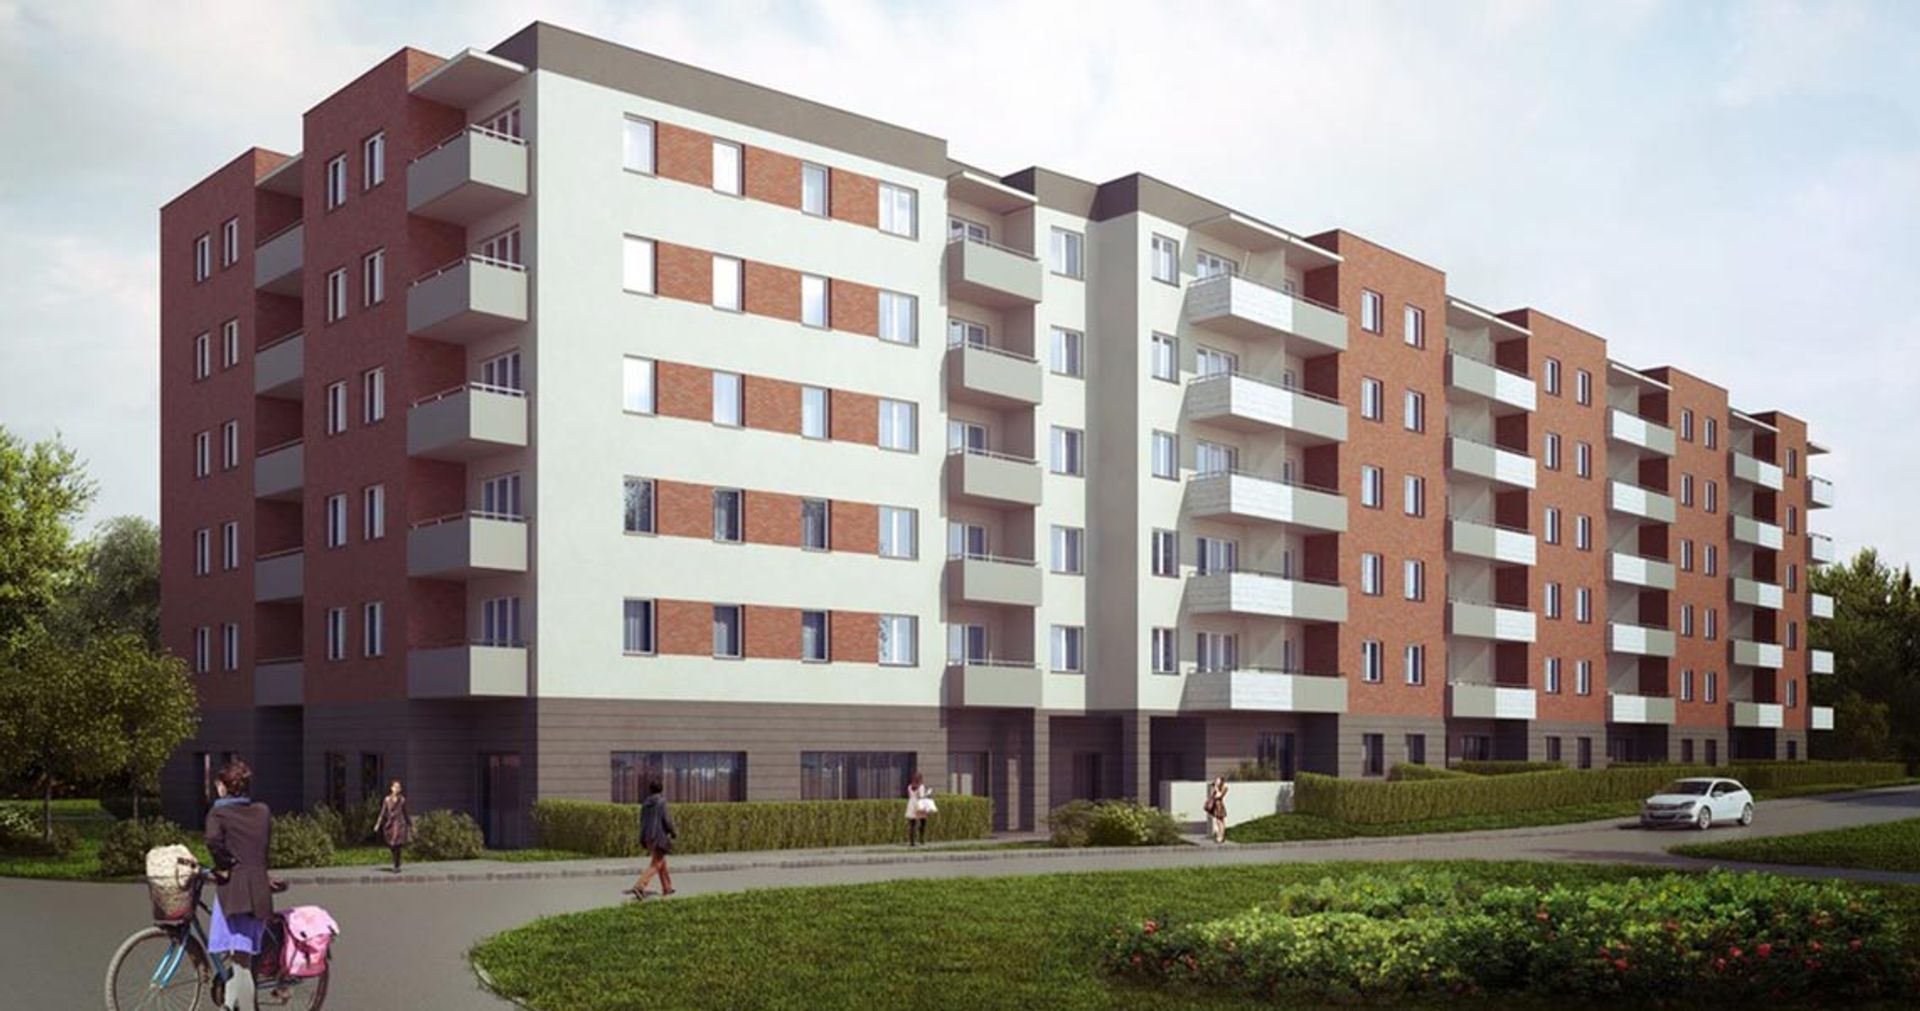  Apartamenty Słubicka. Murapol wybuduje ponad 100 mieszkań na Szczepinie